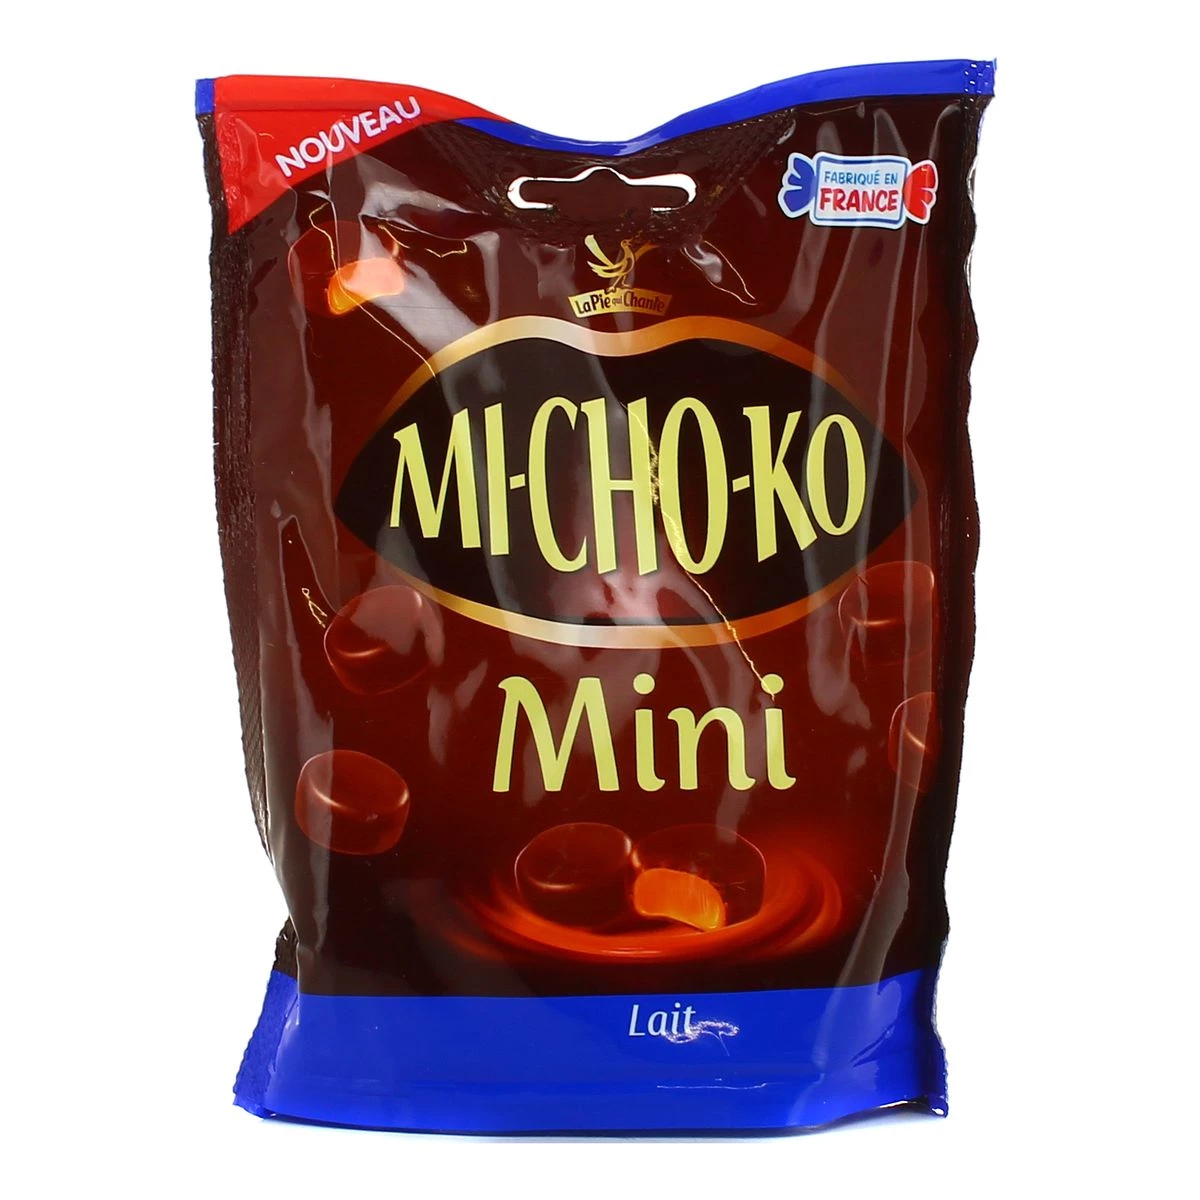 Michoko Mini Lait 160g